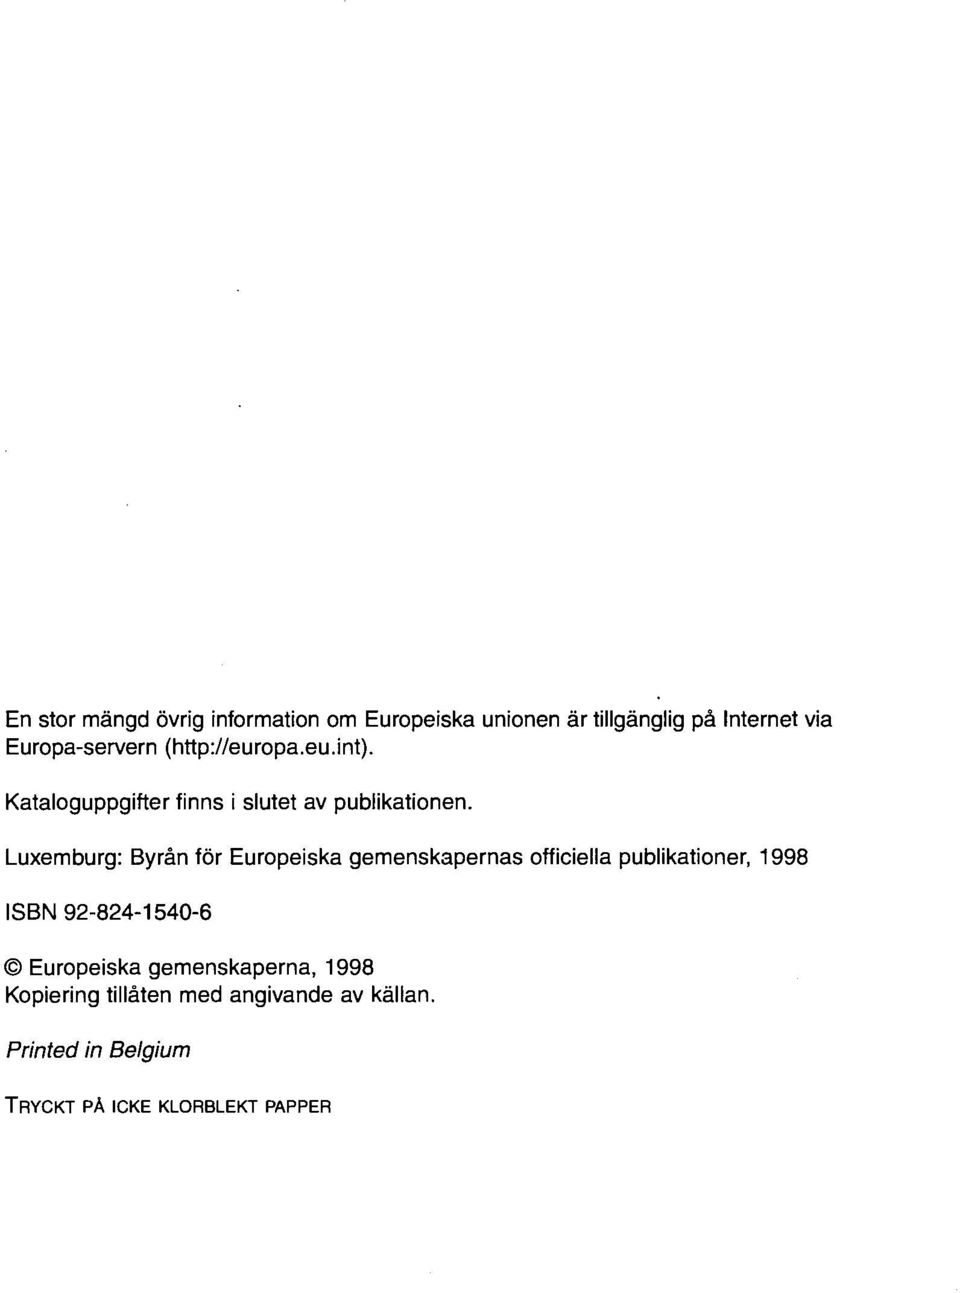 Luxemburg: Byrån för Europeiska gemenskapernas officiella publikationer, 1998 ISBN 92-824-1540-6